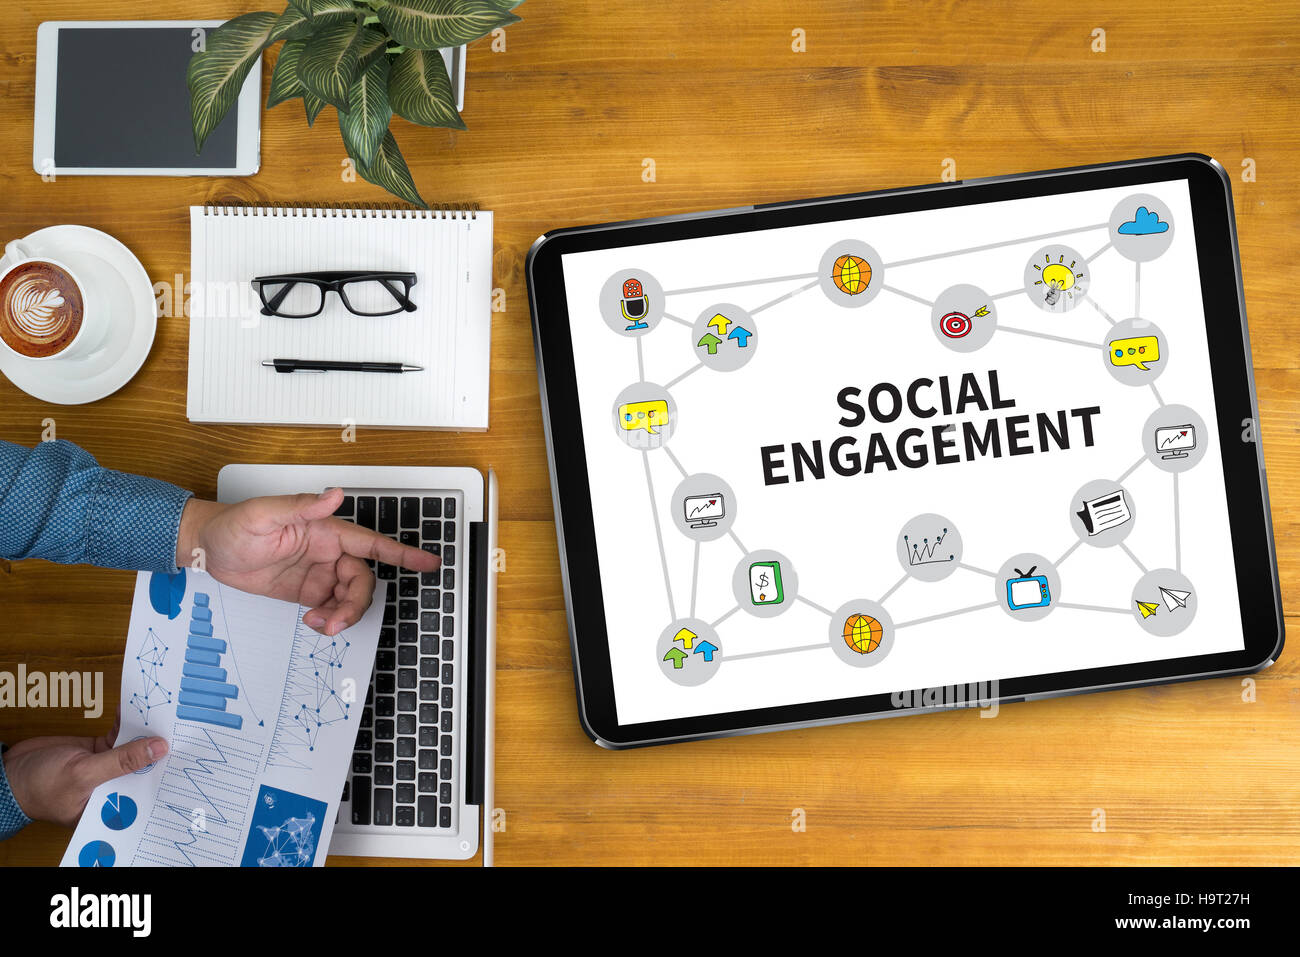 L'engagement social Banque D'Images